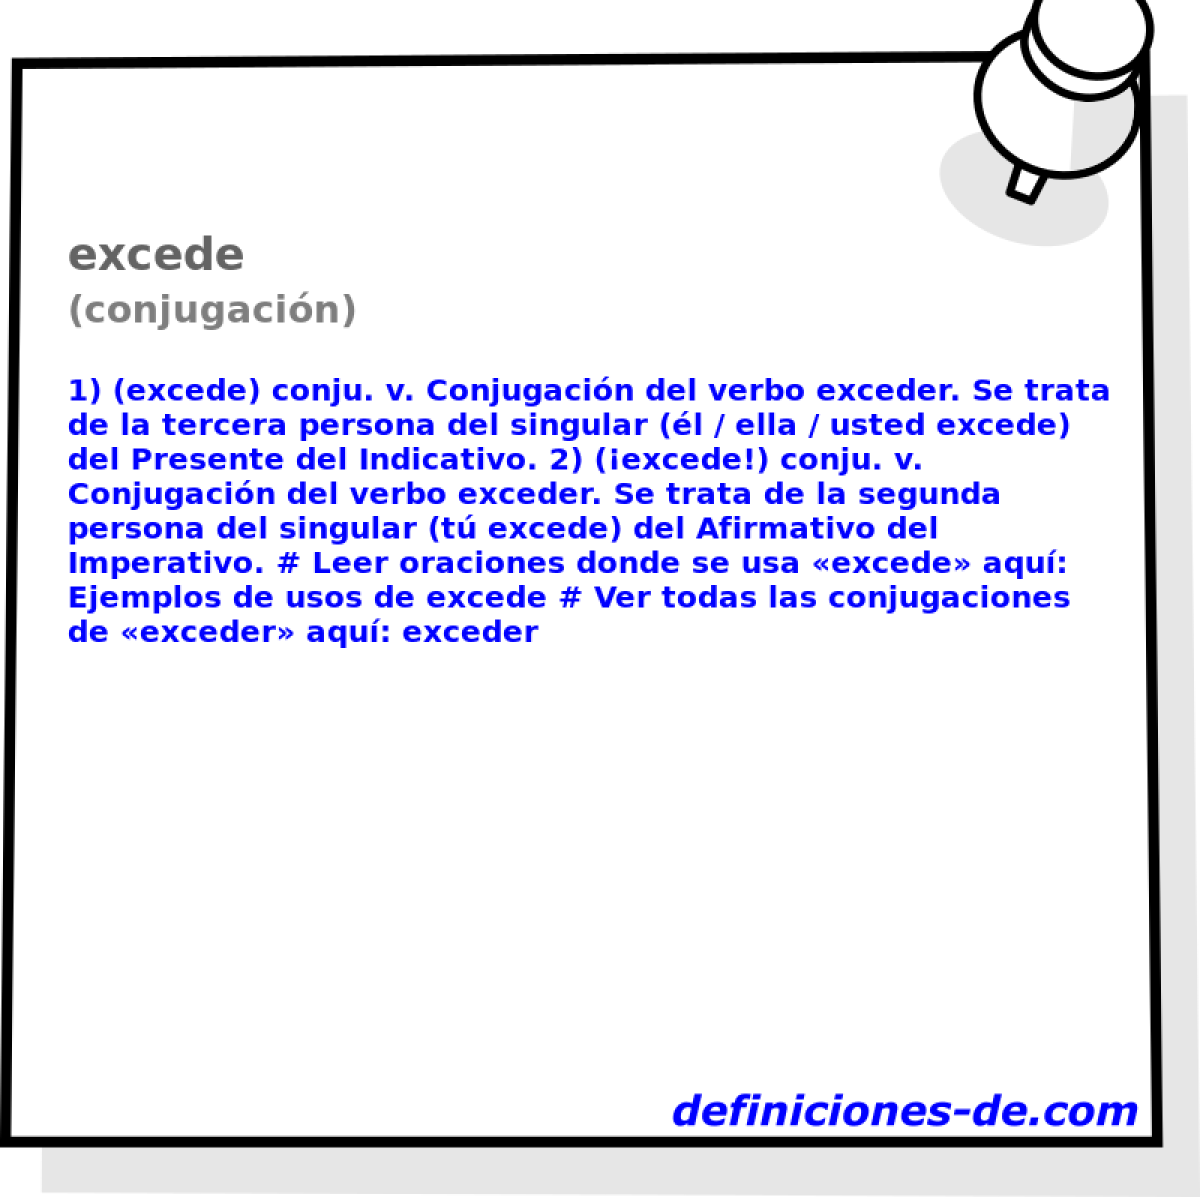 excede (conjugacin)